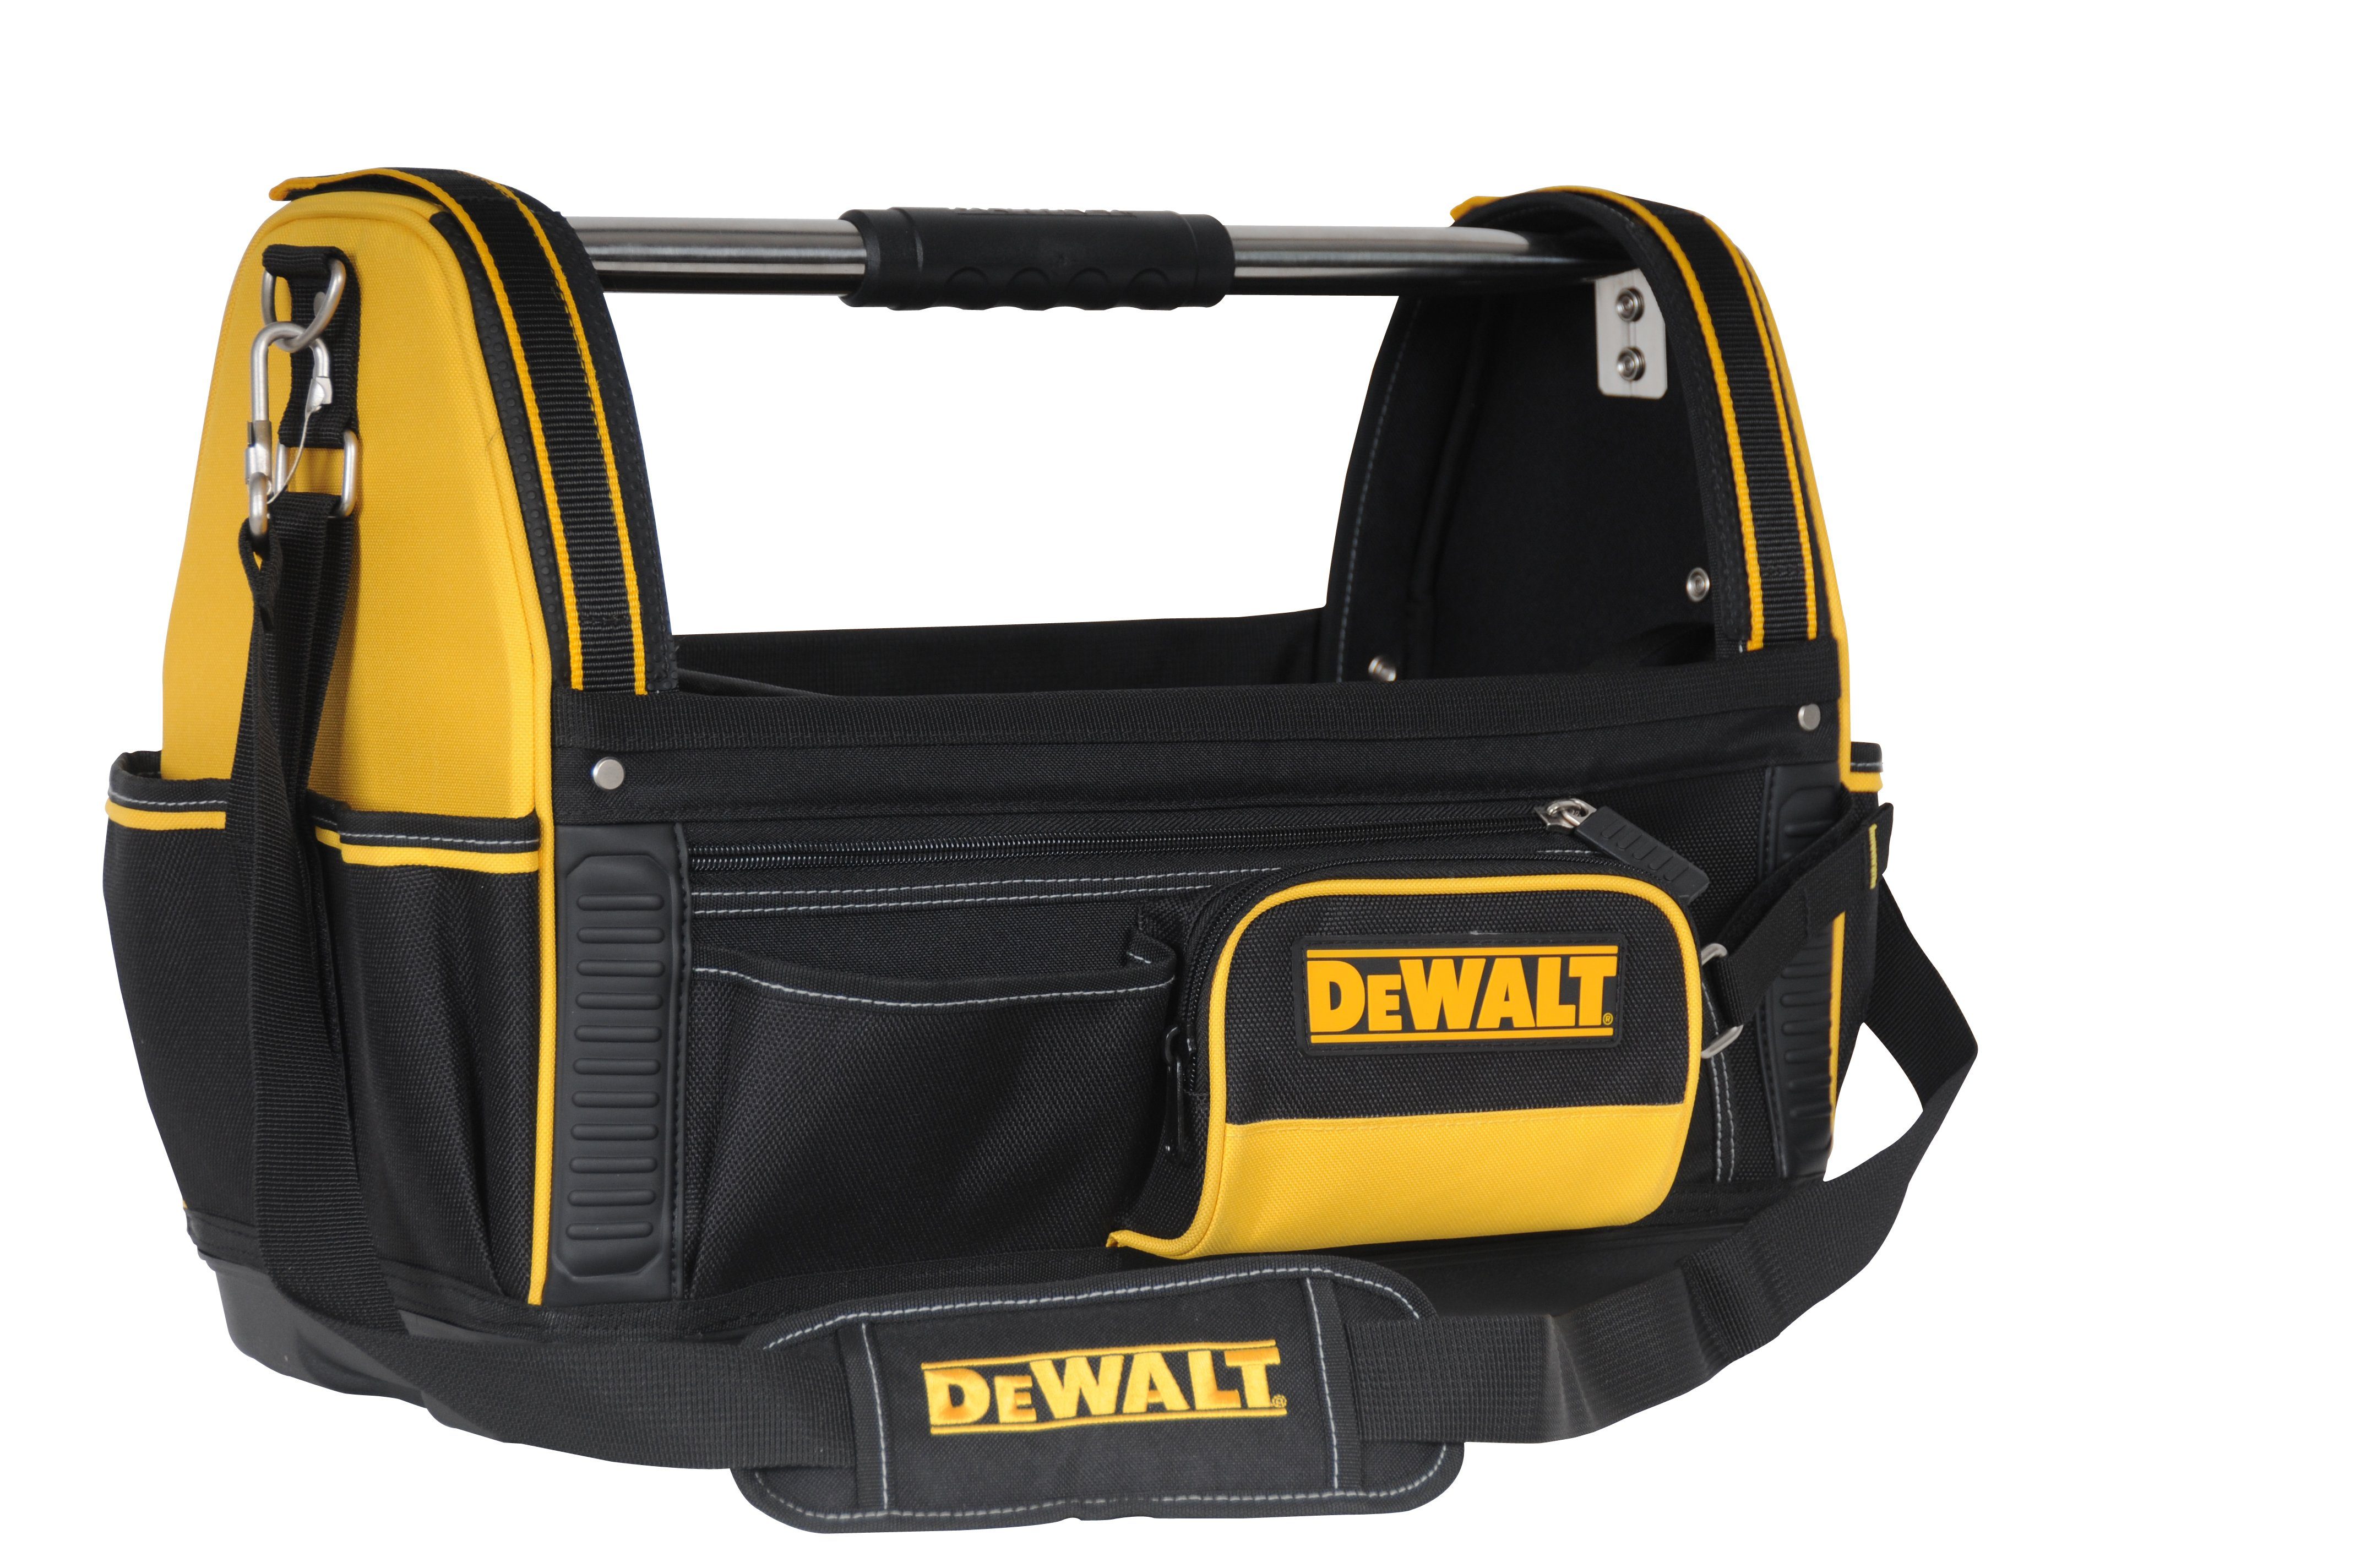 DeWalt Werkzeugtasche 1-79-208 - Werkzeugtrage / Werkzeugtasche / Tragetasche für Tool-Kit, 500 x 300 x 360 mm - Nylon | Werkzeugtaschen